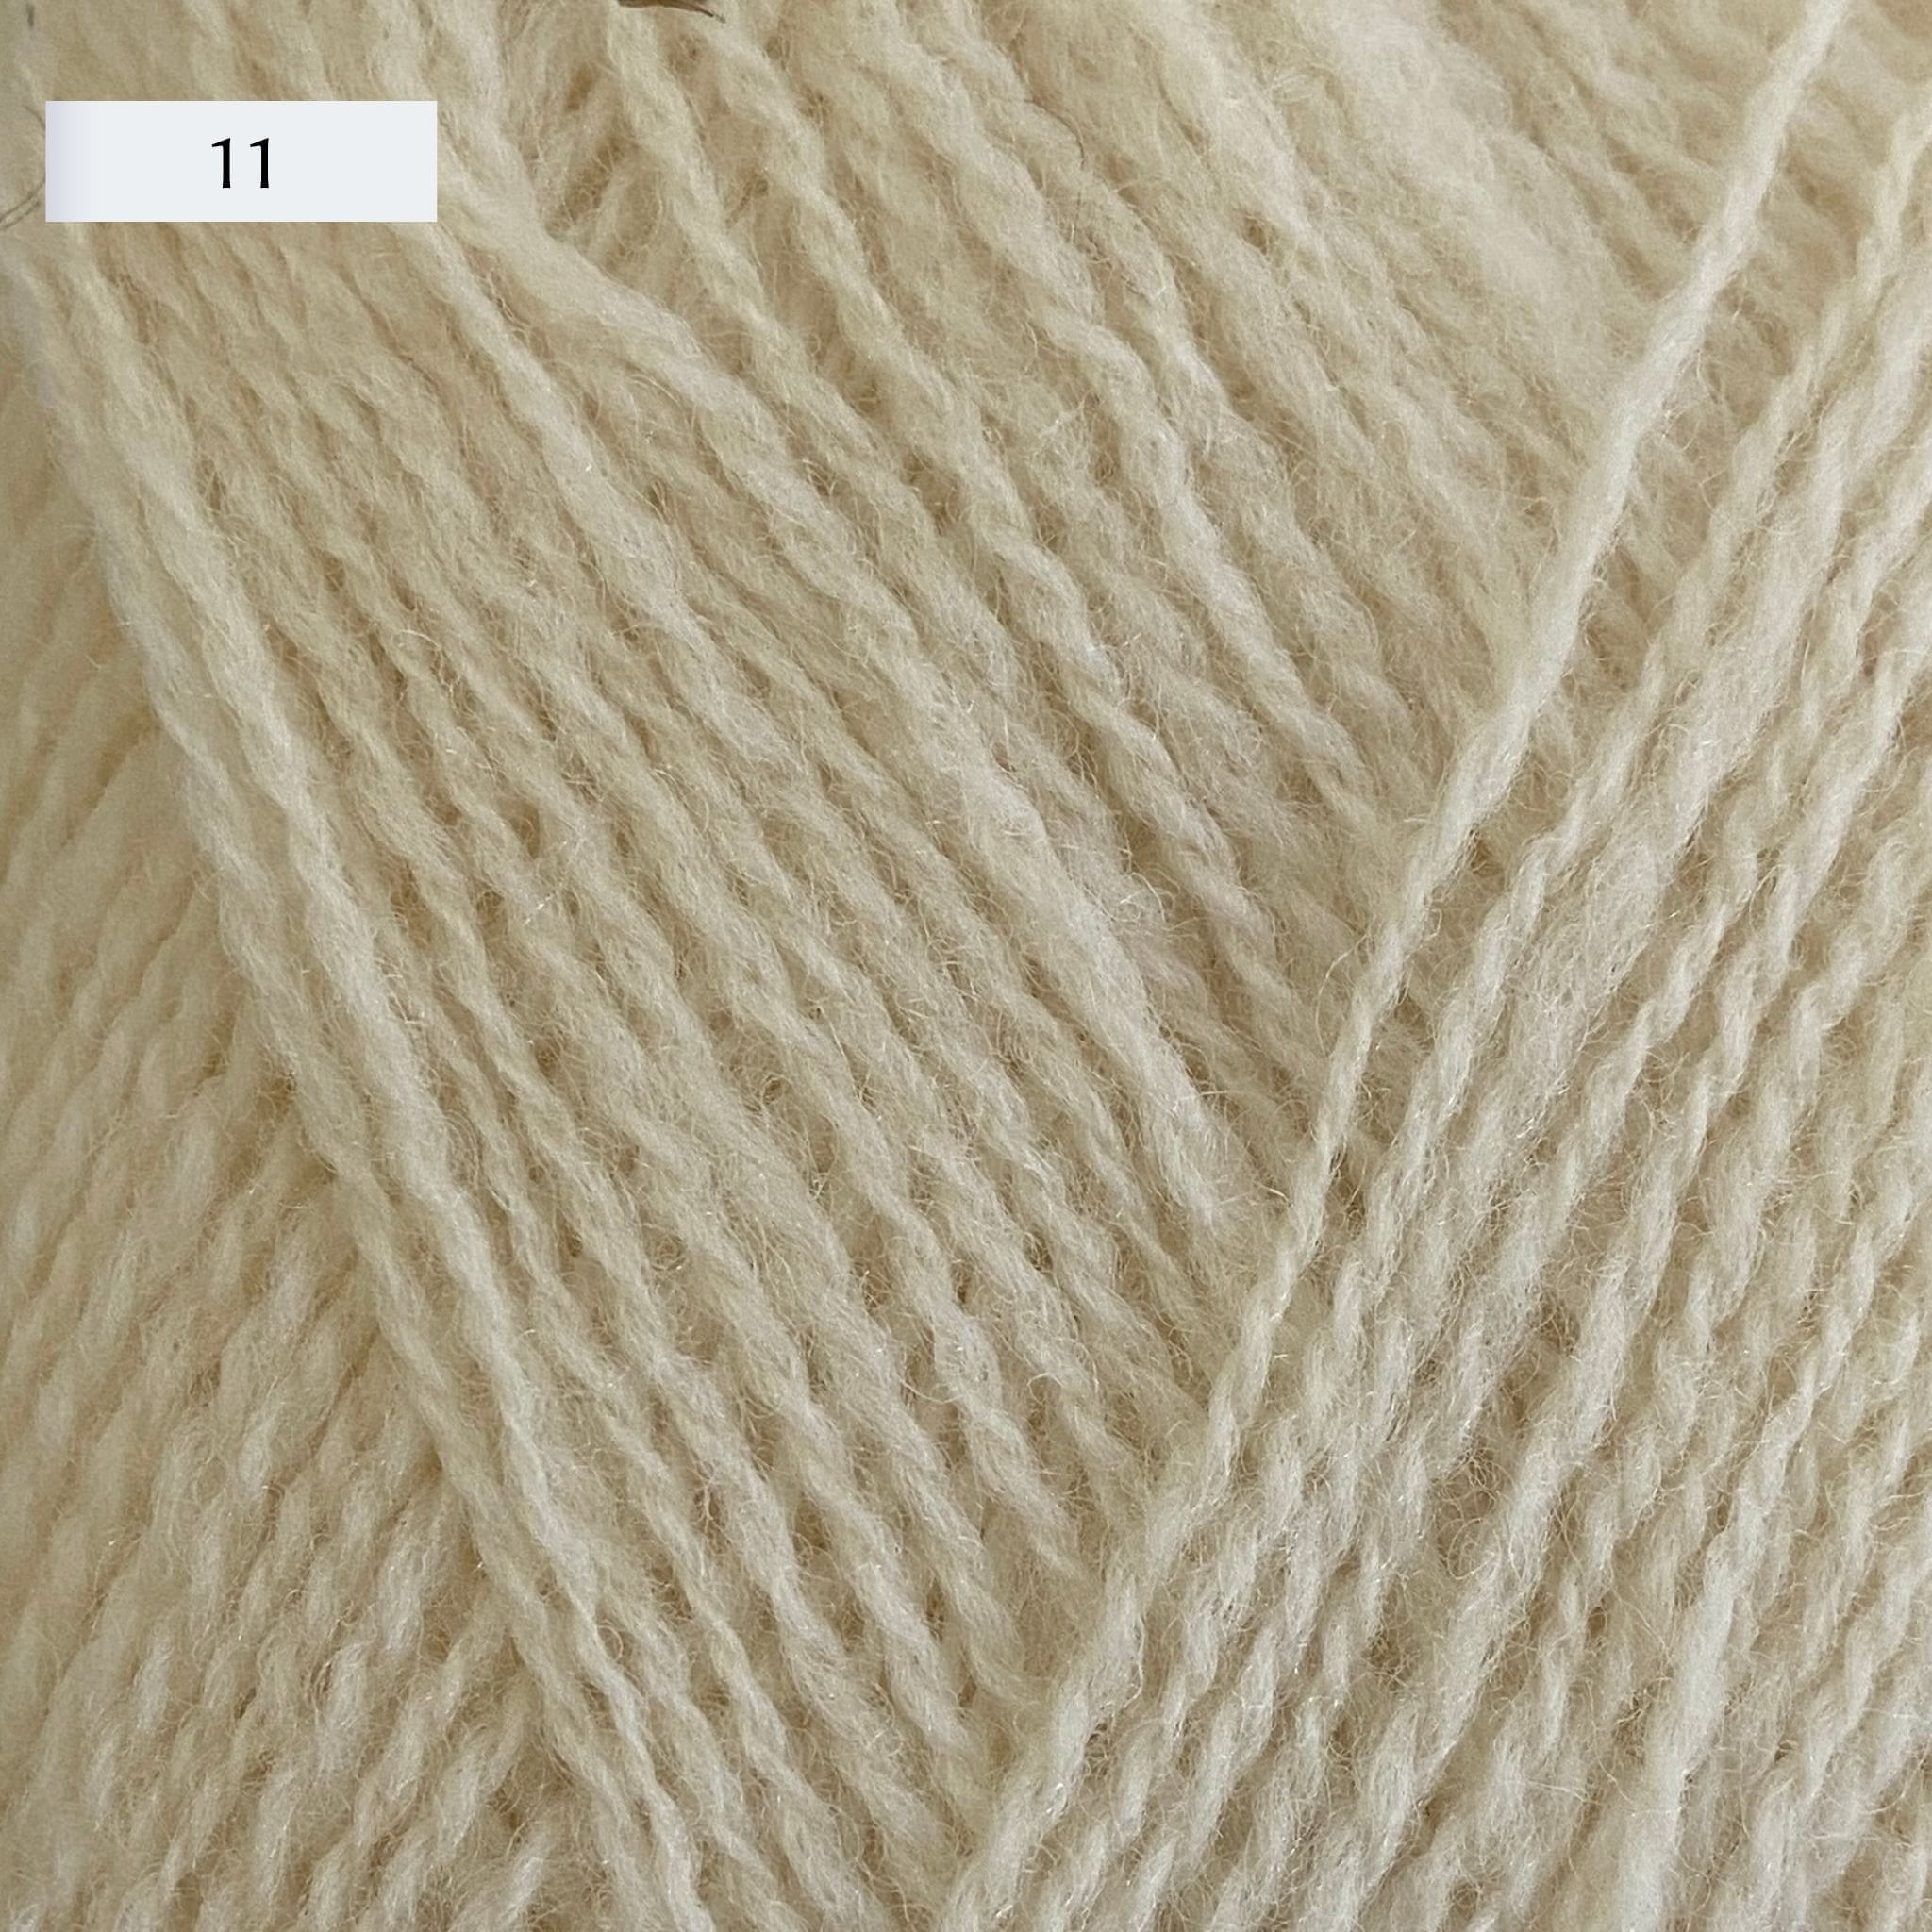 Rauma Lamullgarn, a fingering weight yarn, in color 11, a warm cream